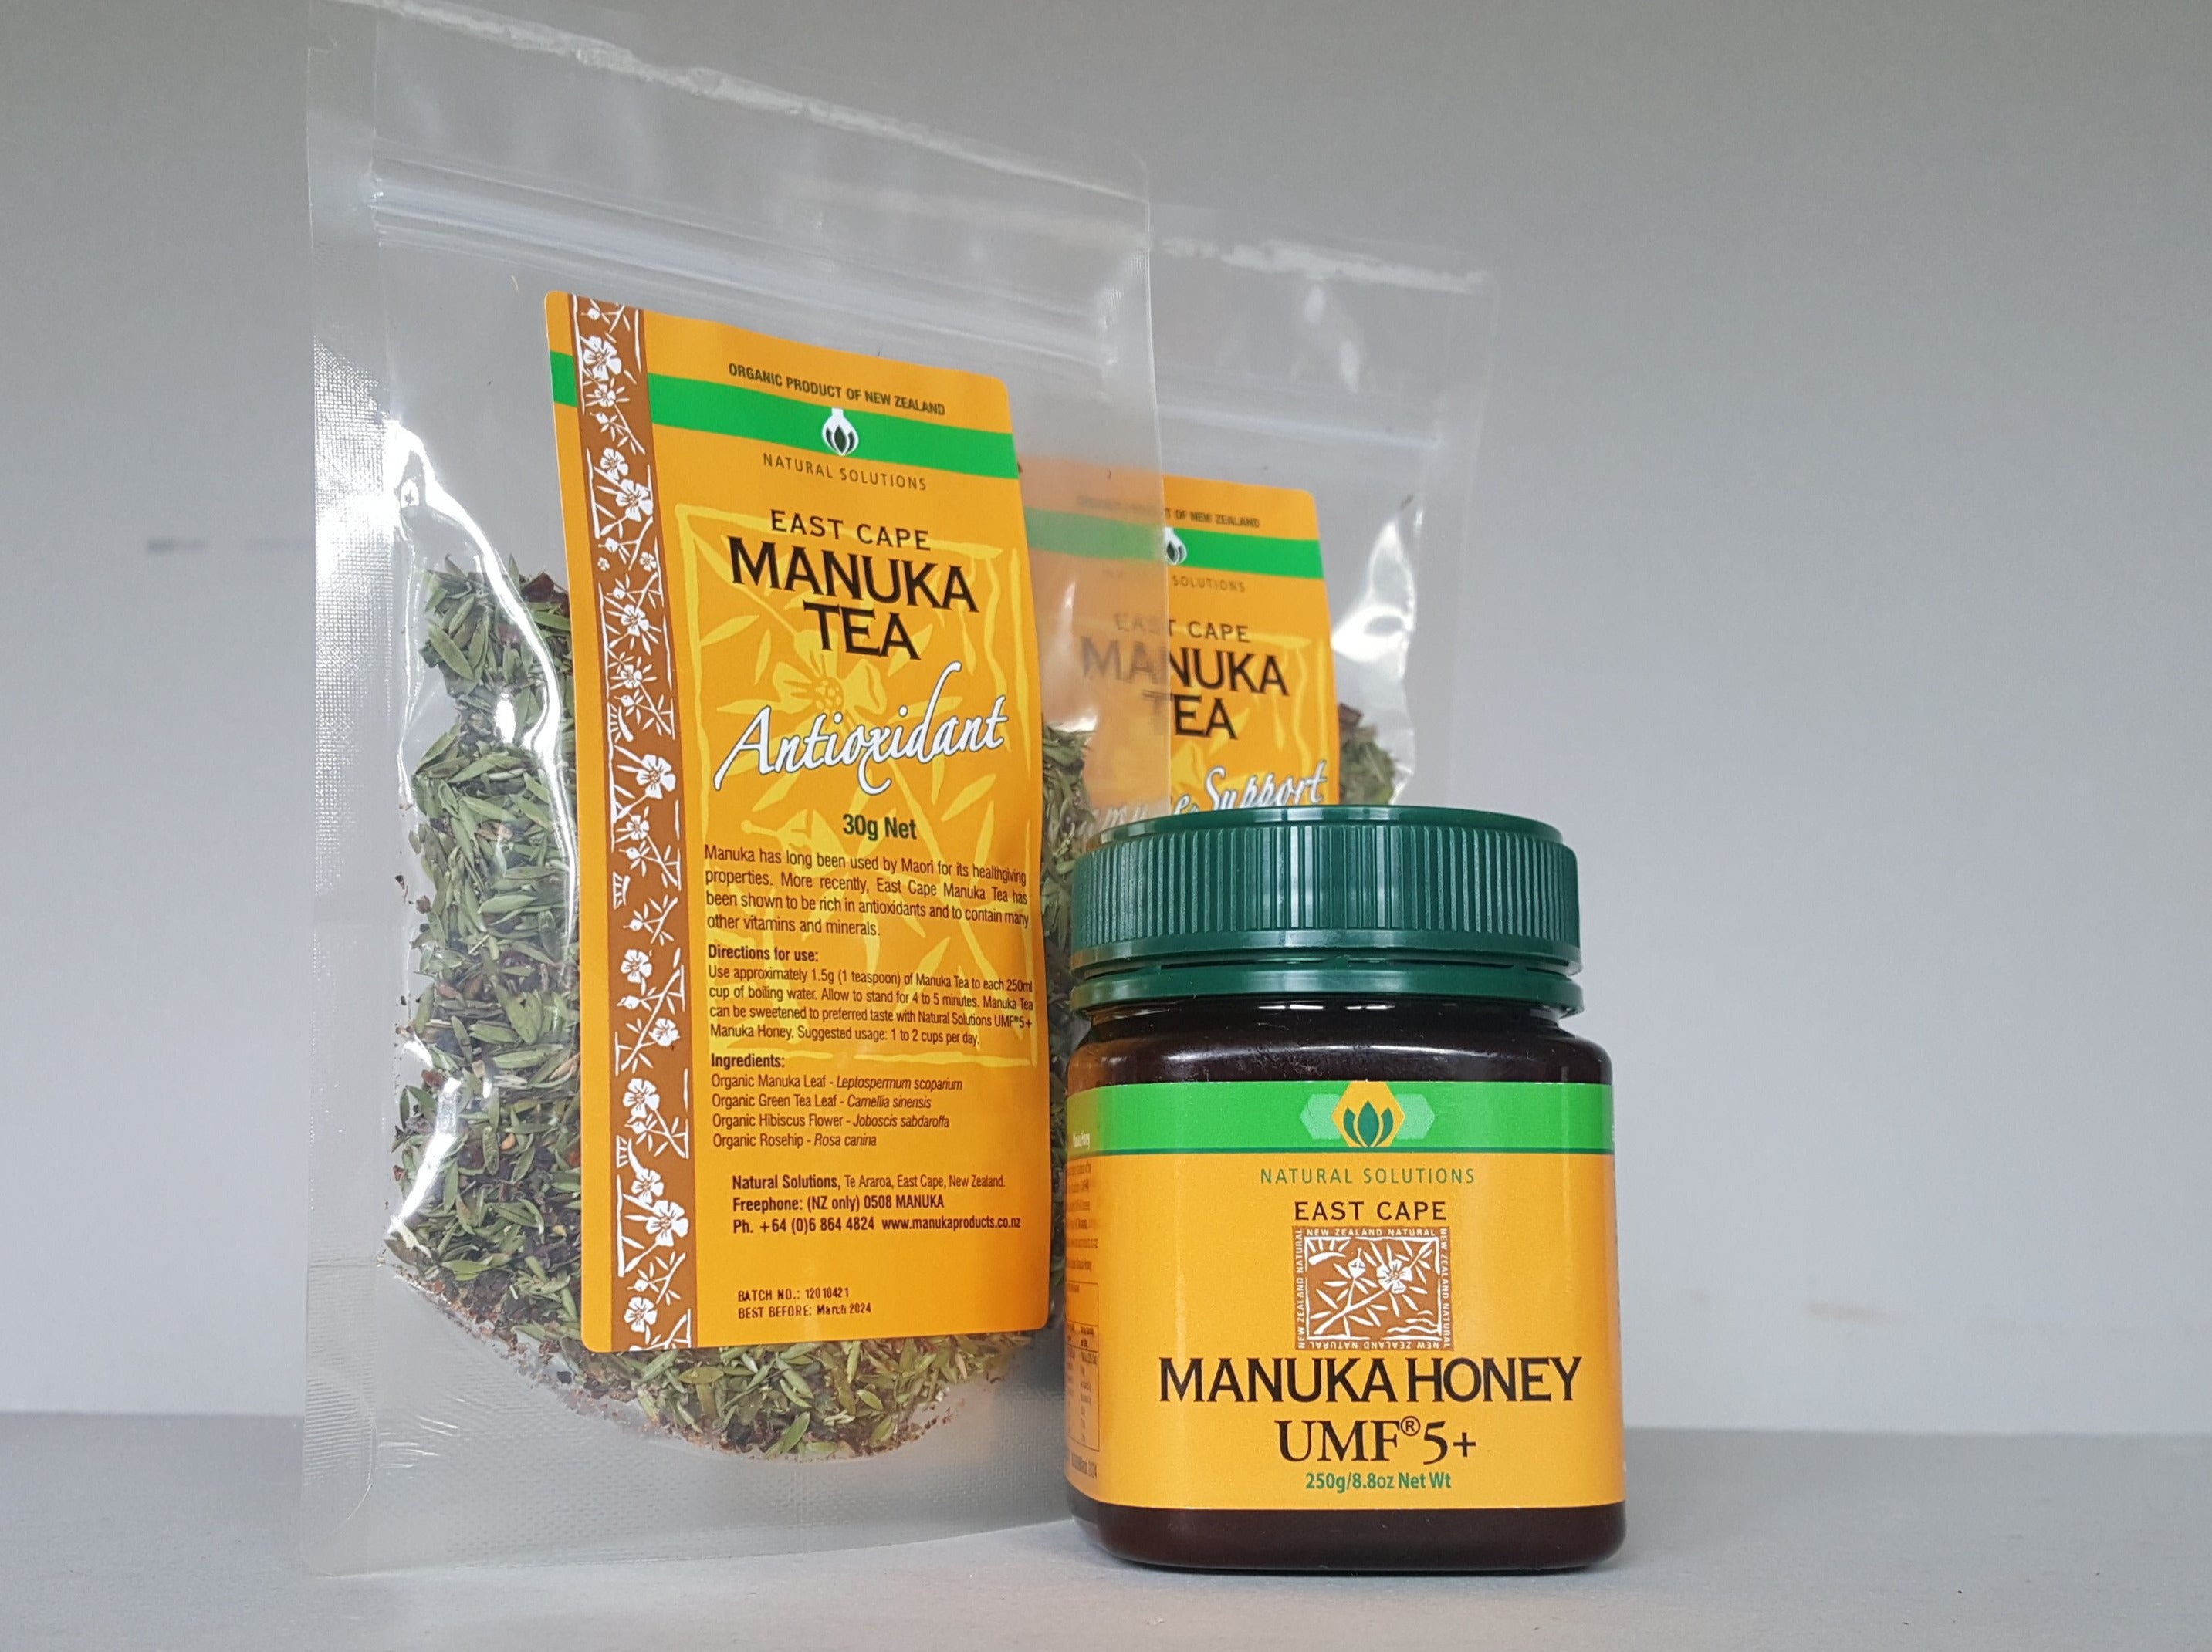 East Cape Manuka Teas and Honey